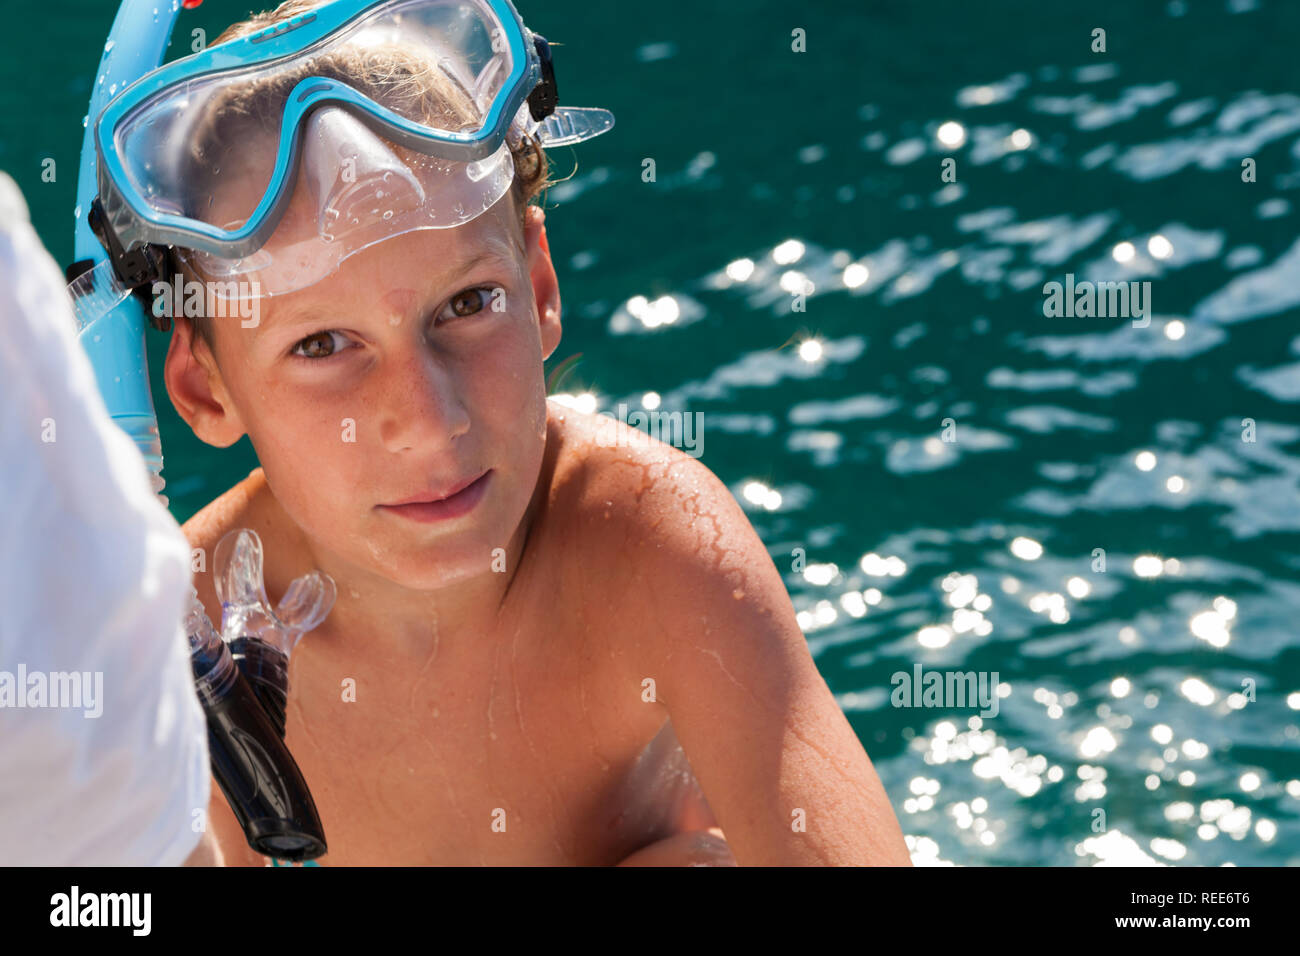 Eine nette junge Schwimmen mit Maske und Schnorchel schwimmen  Stockfotografie - Alamy